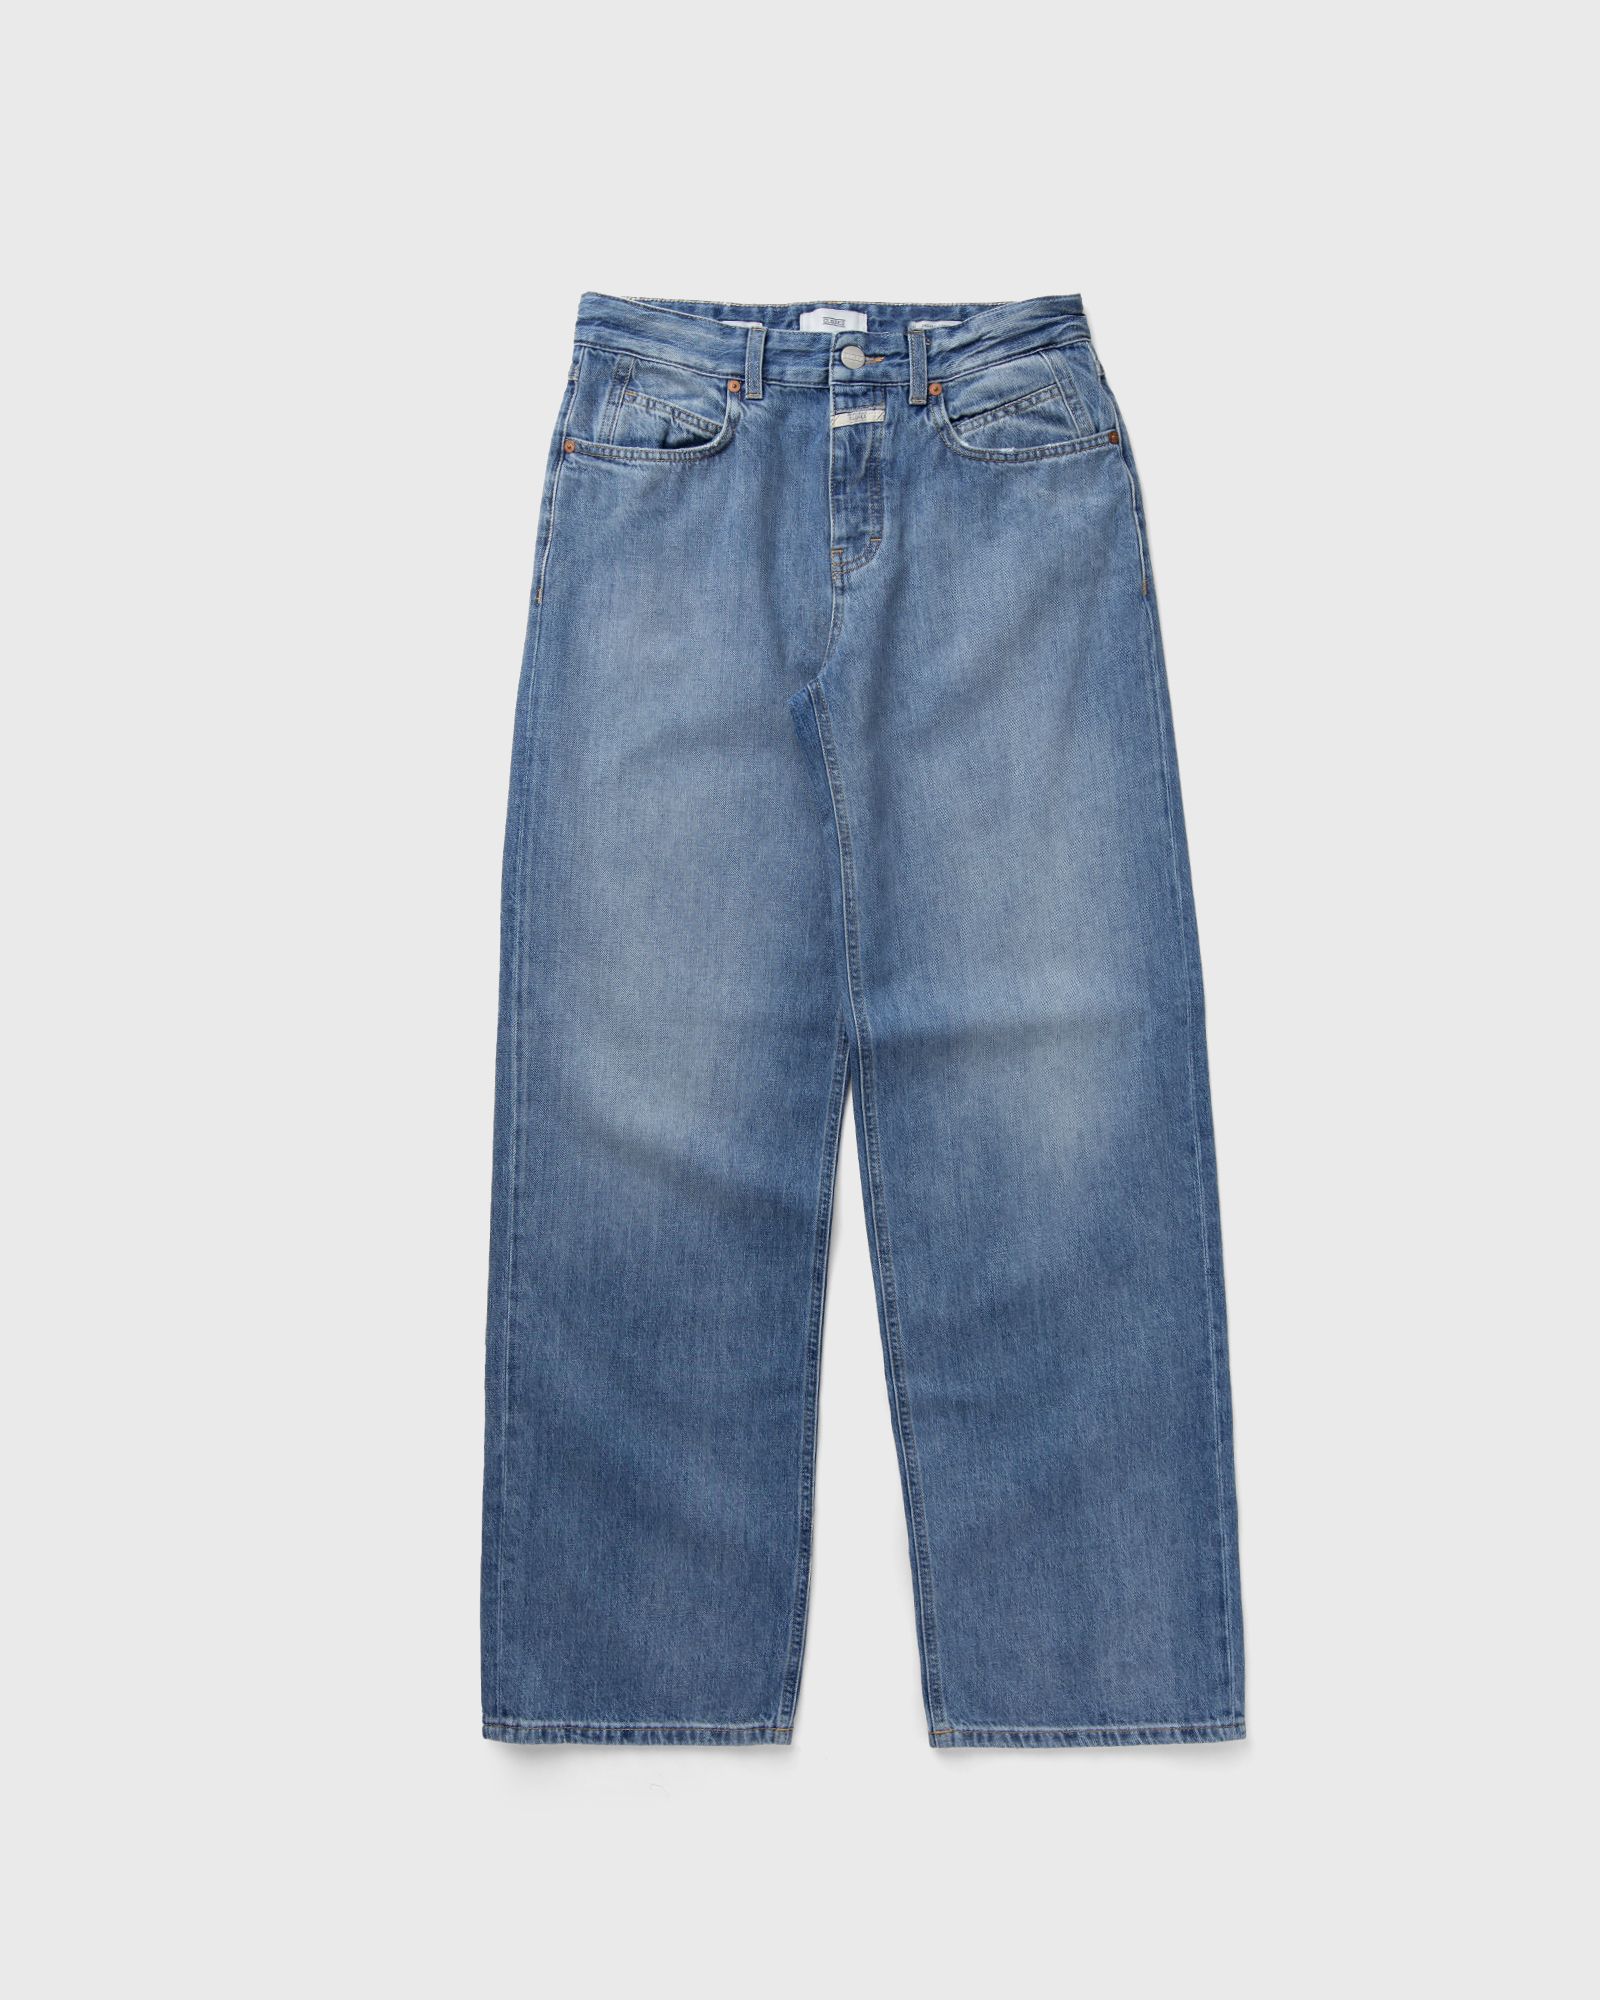 CLOSED - nikka women jeans blue in größe:m